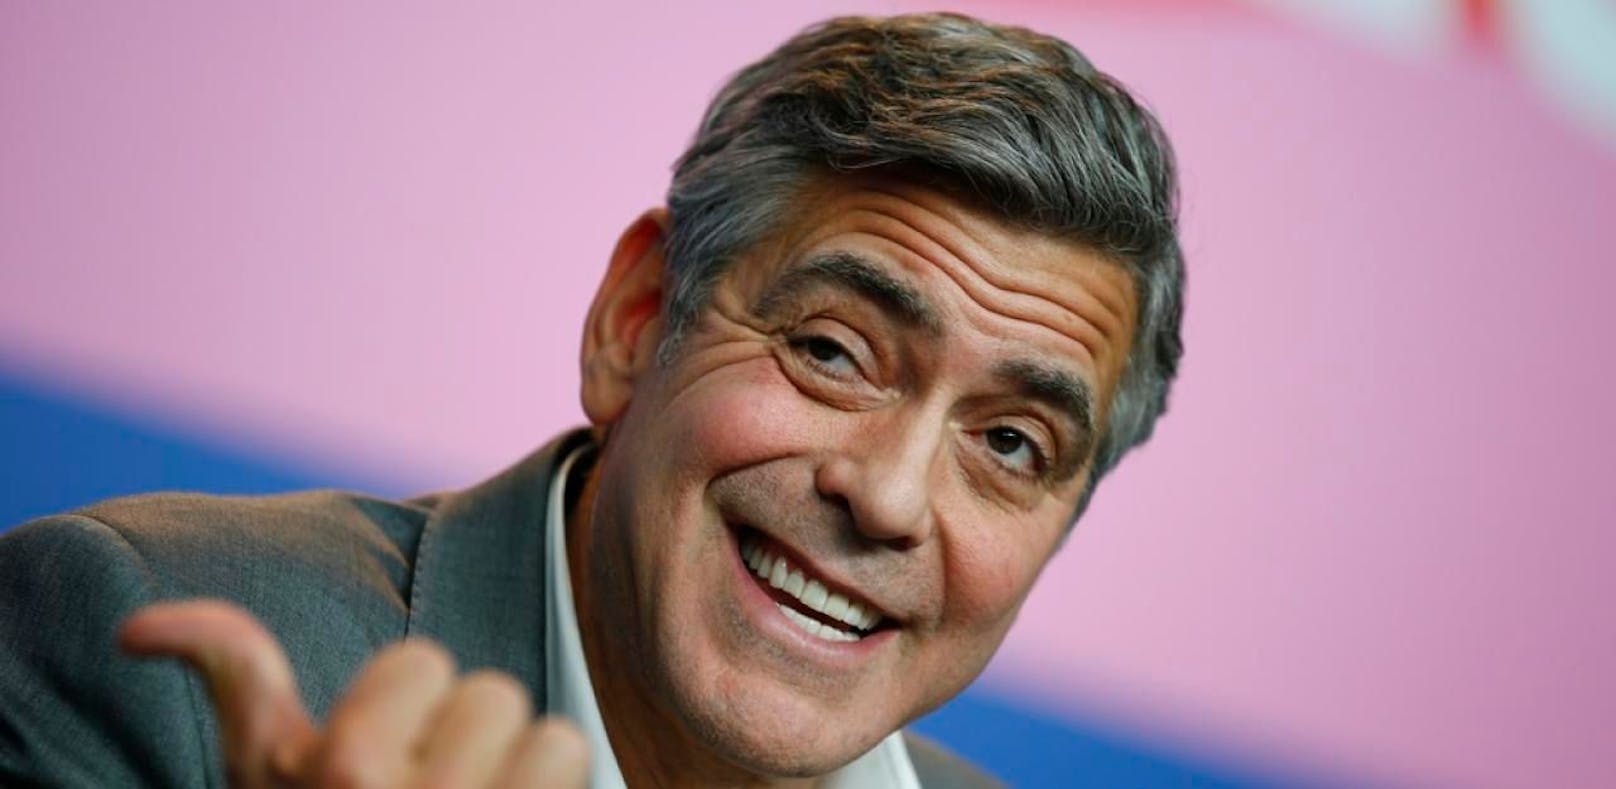 Clooney kauft sich eigenen Spionage-Satelliten